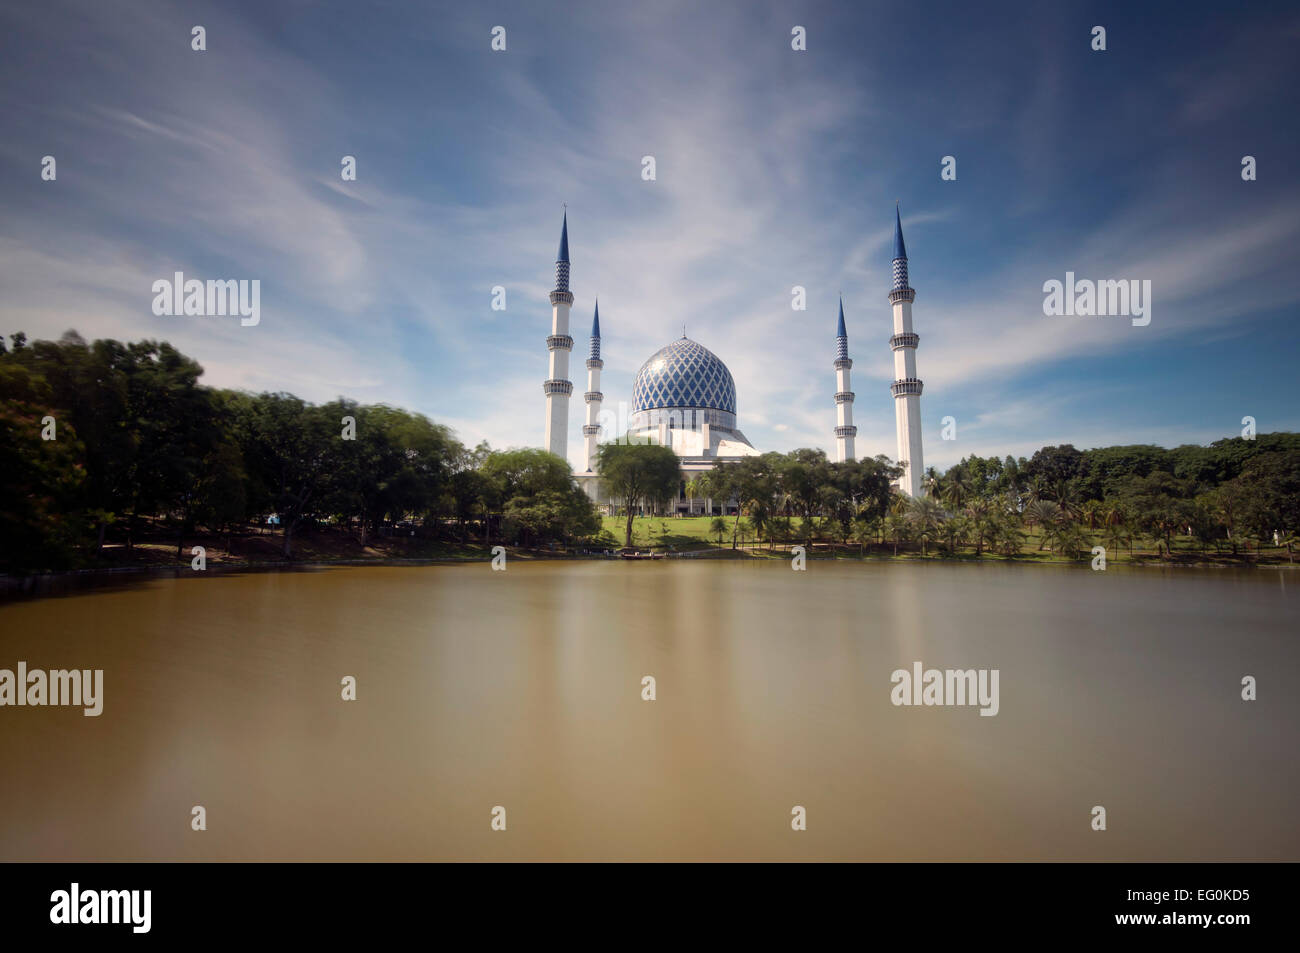 Malaysia, Selangor, Shah mosque Stock Photo